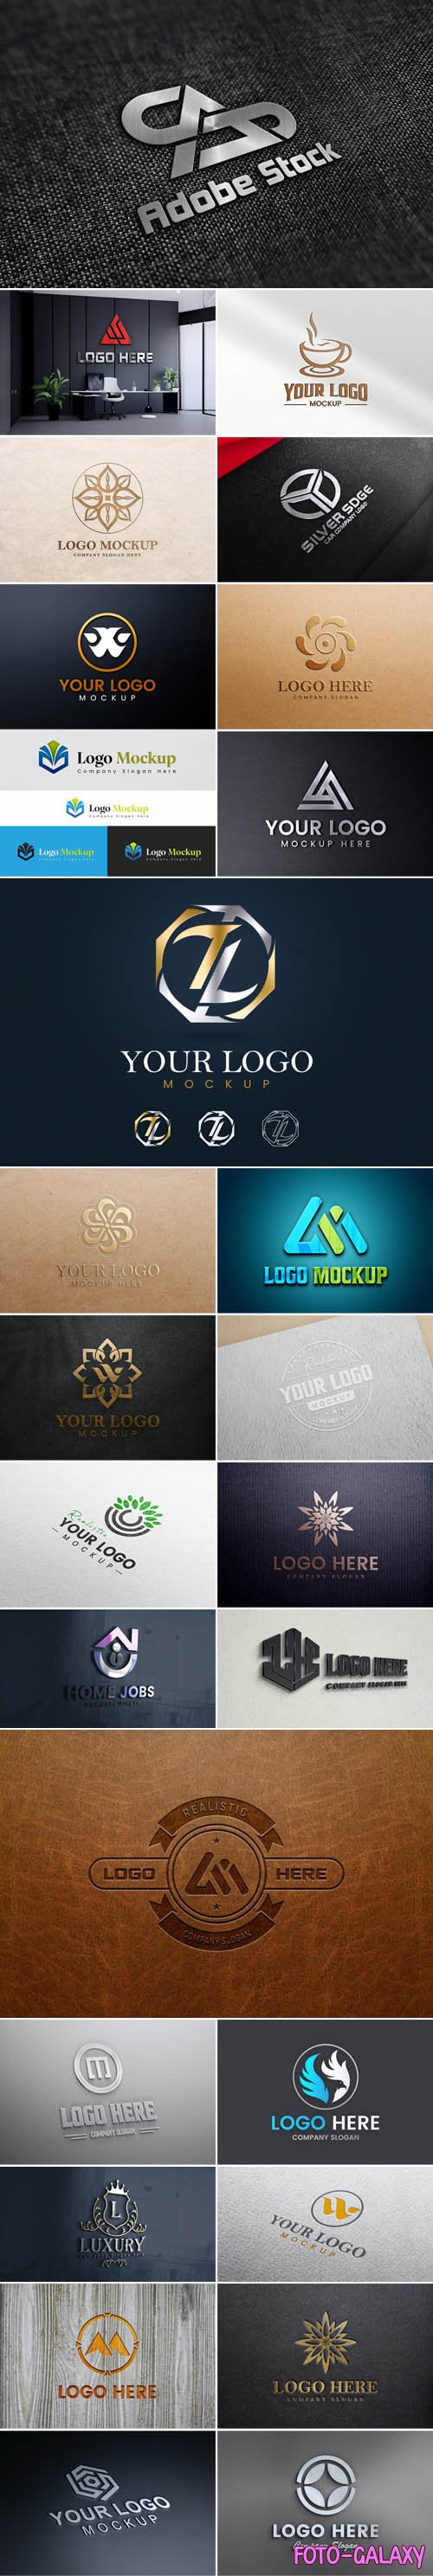 Modern 3D Logos PSD Mockups Collection